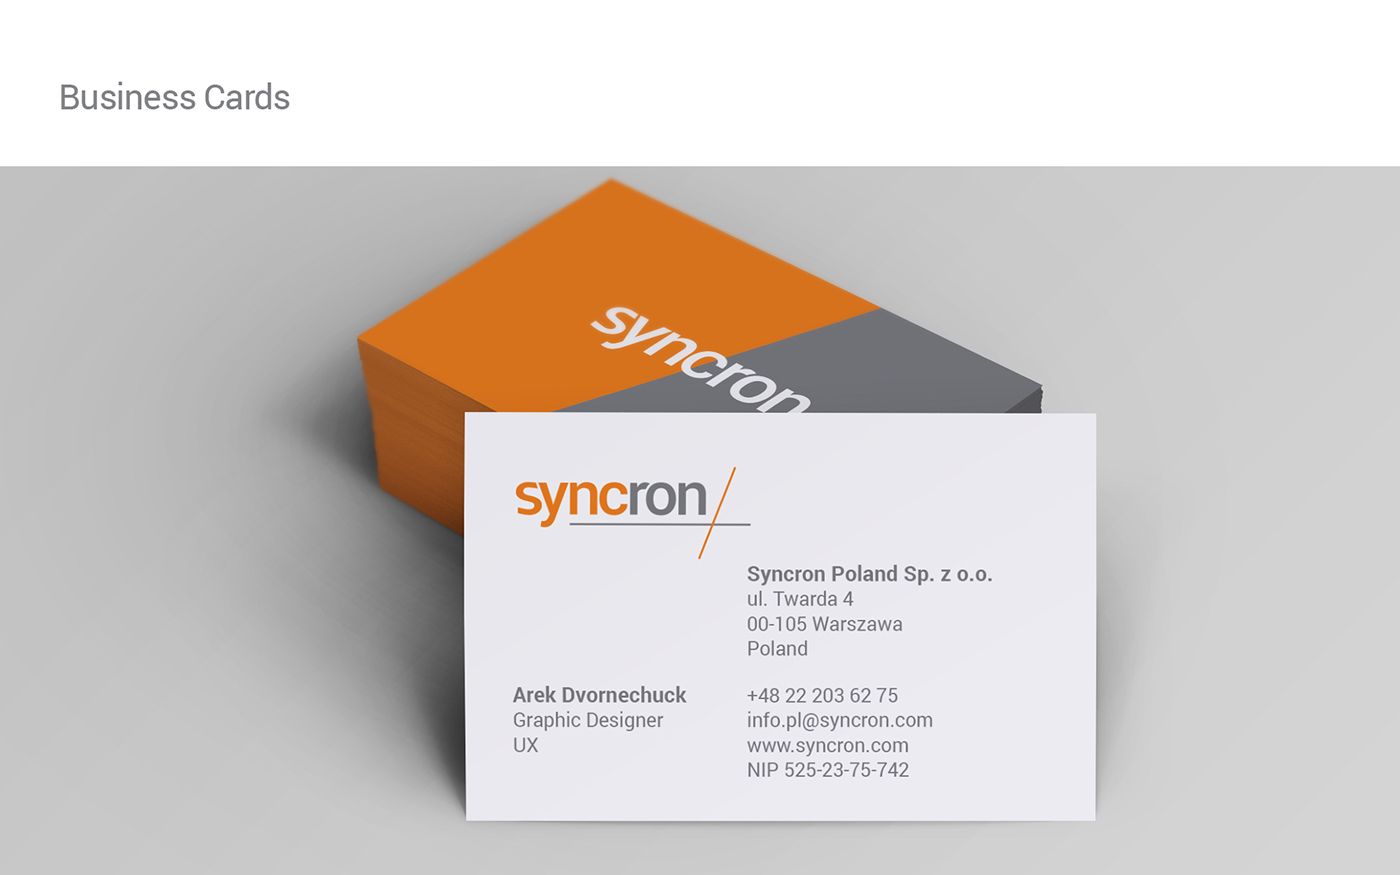 syncron diagonal Logotype orange grey